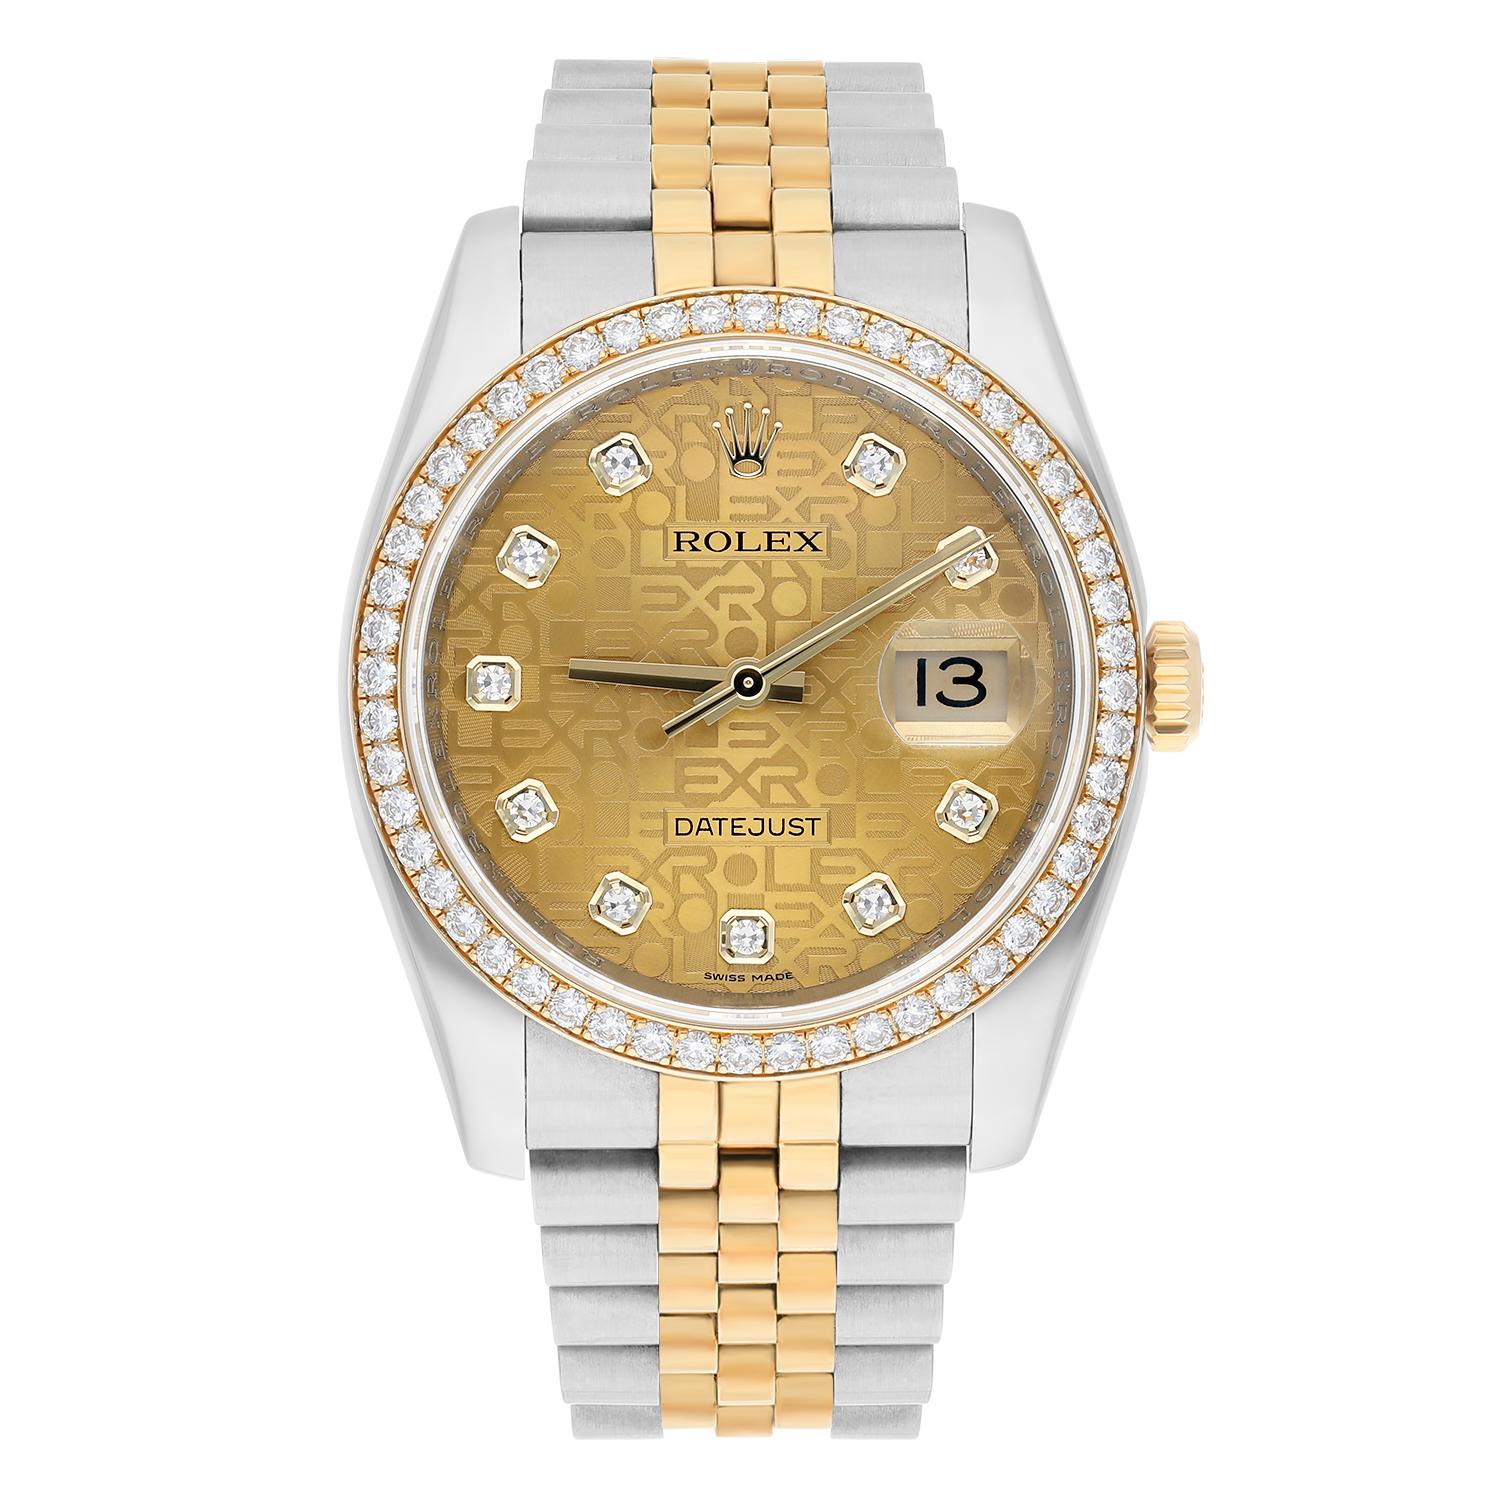 Élevez votre style avec cette exquise montre-bracelet Rolex Datejust. Fabriqué avec un bracelet en acier inoxydable et en or jaune, ce garde-temps classique arbore un cadran champagne d'usine avec des index en diamant. Cette montre luxueuse est